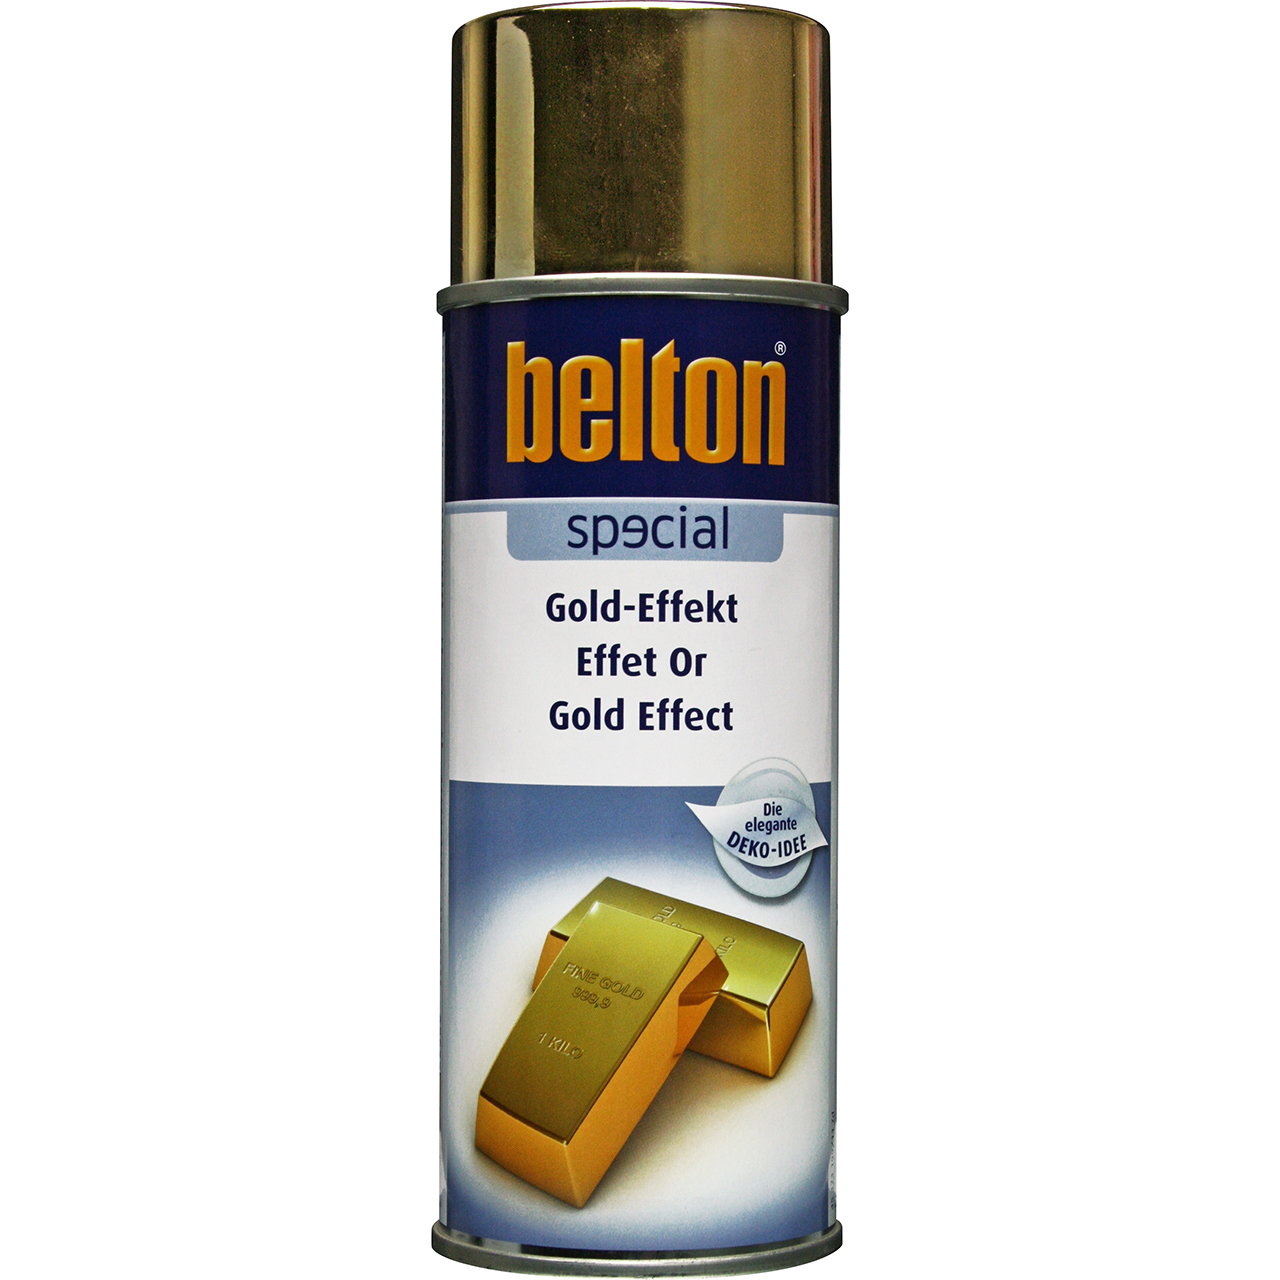 belton Special Gold-Effekt, 400ml